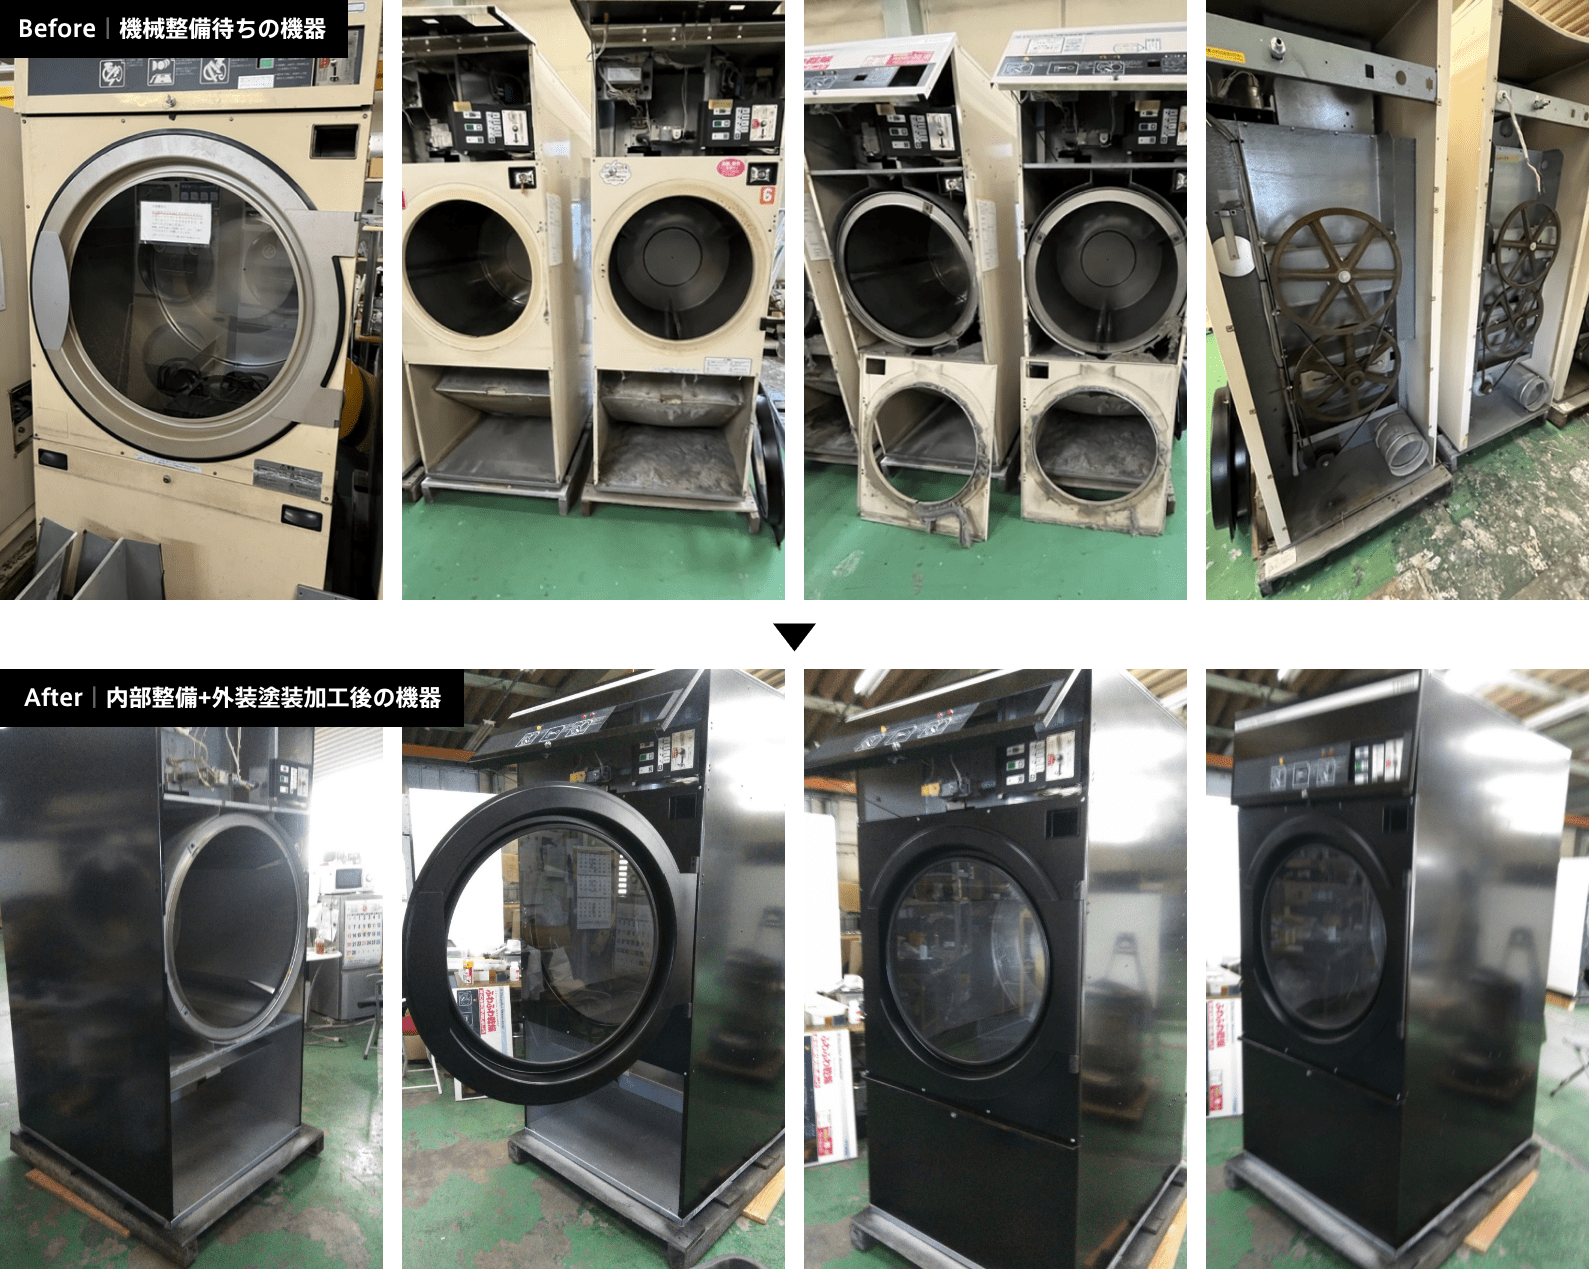 機械整備待ちの機器から内部整備+外装塗装後の機器の比較